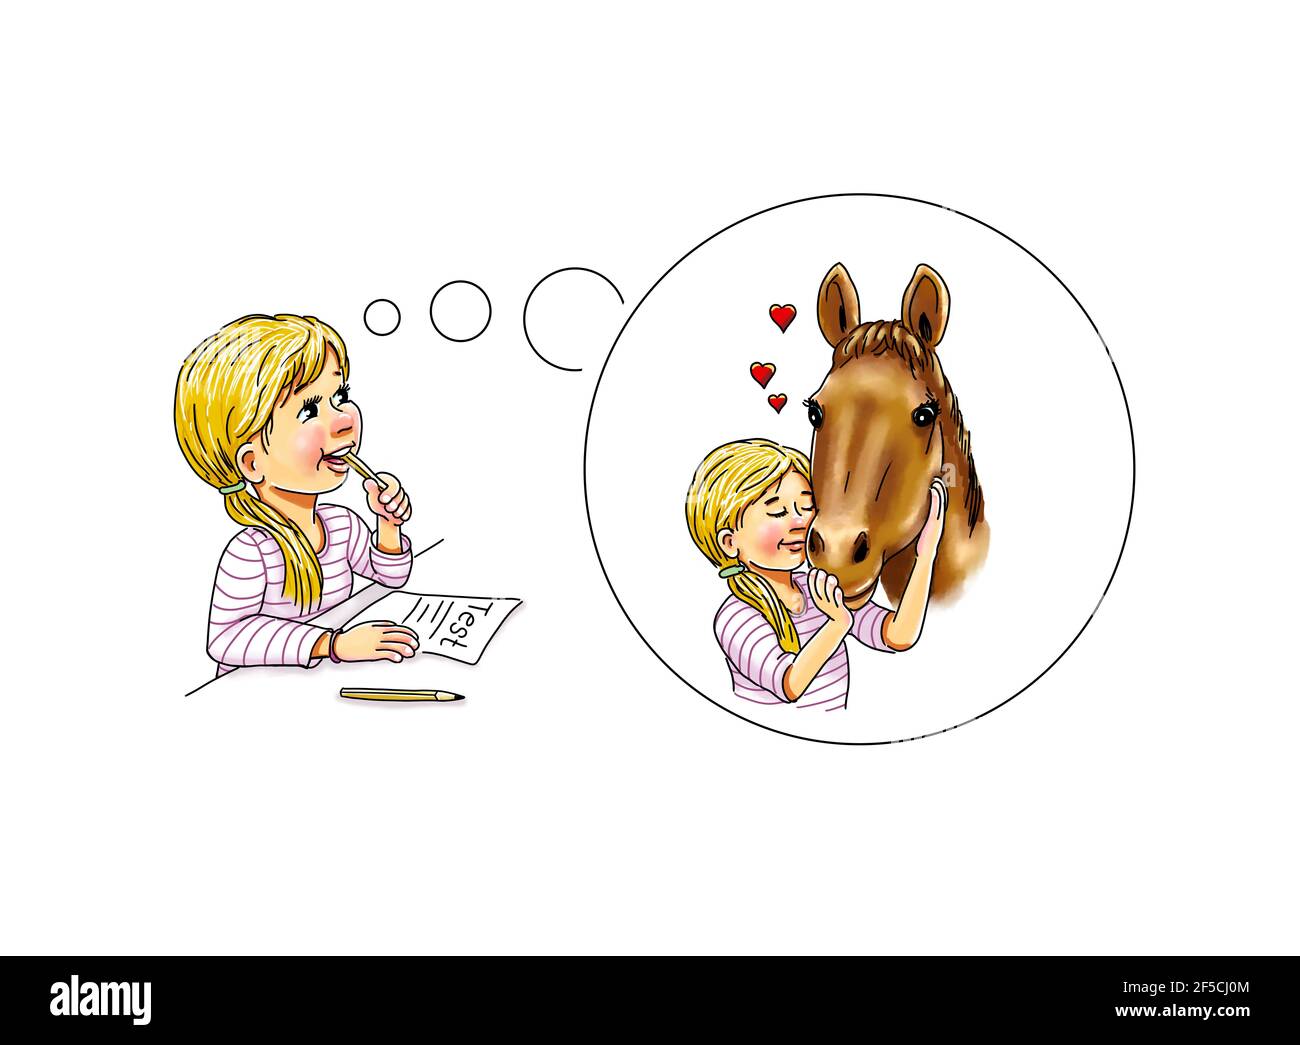 Mädchen Student Schulmädchen Test denkt über Gedanken Blase Phantasie Fantasie Pferd umarmen wenig Herz Kraft Tier helfen, lernen Stress zu unterstützen Überwinden sie fe Stockfoto